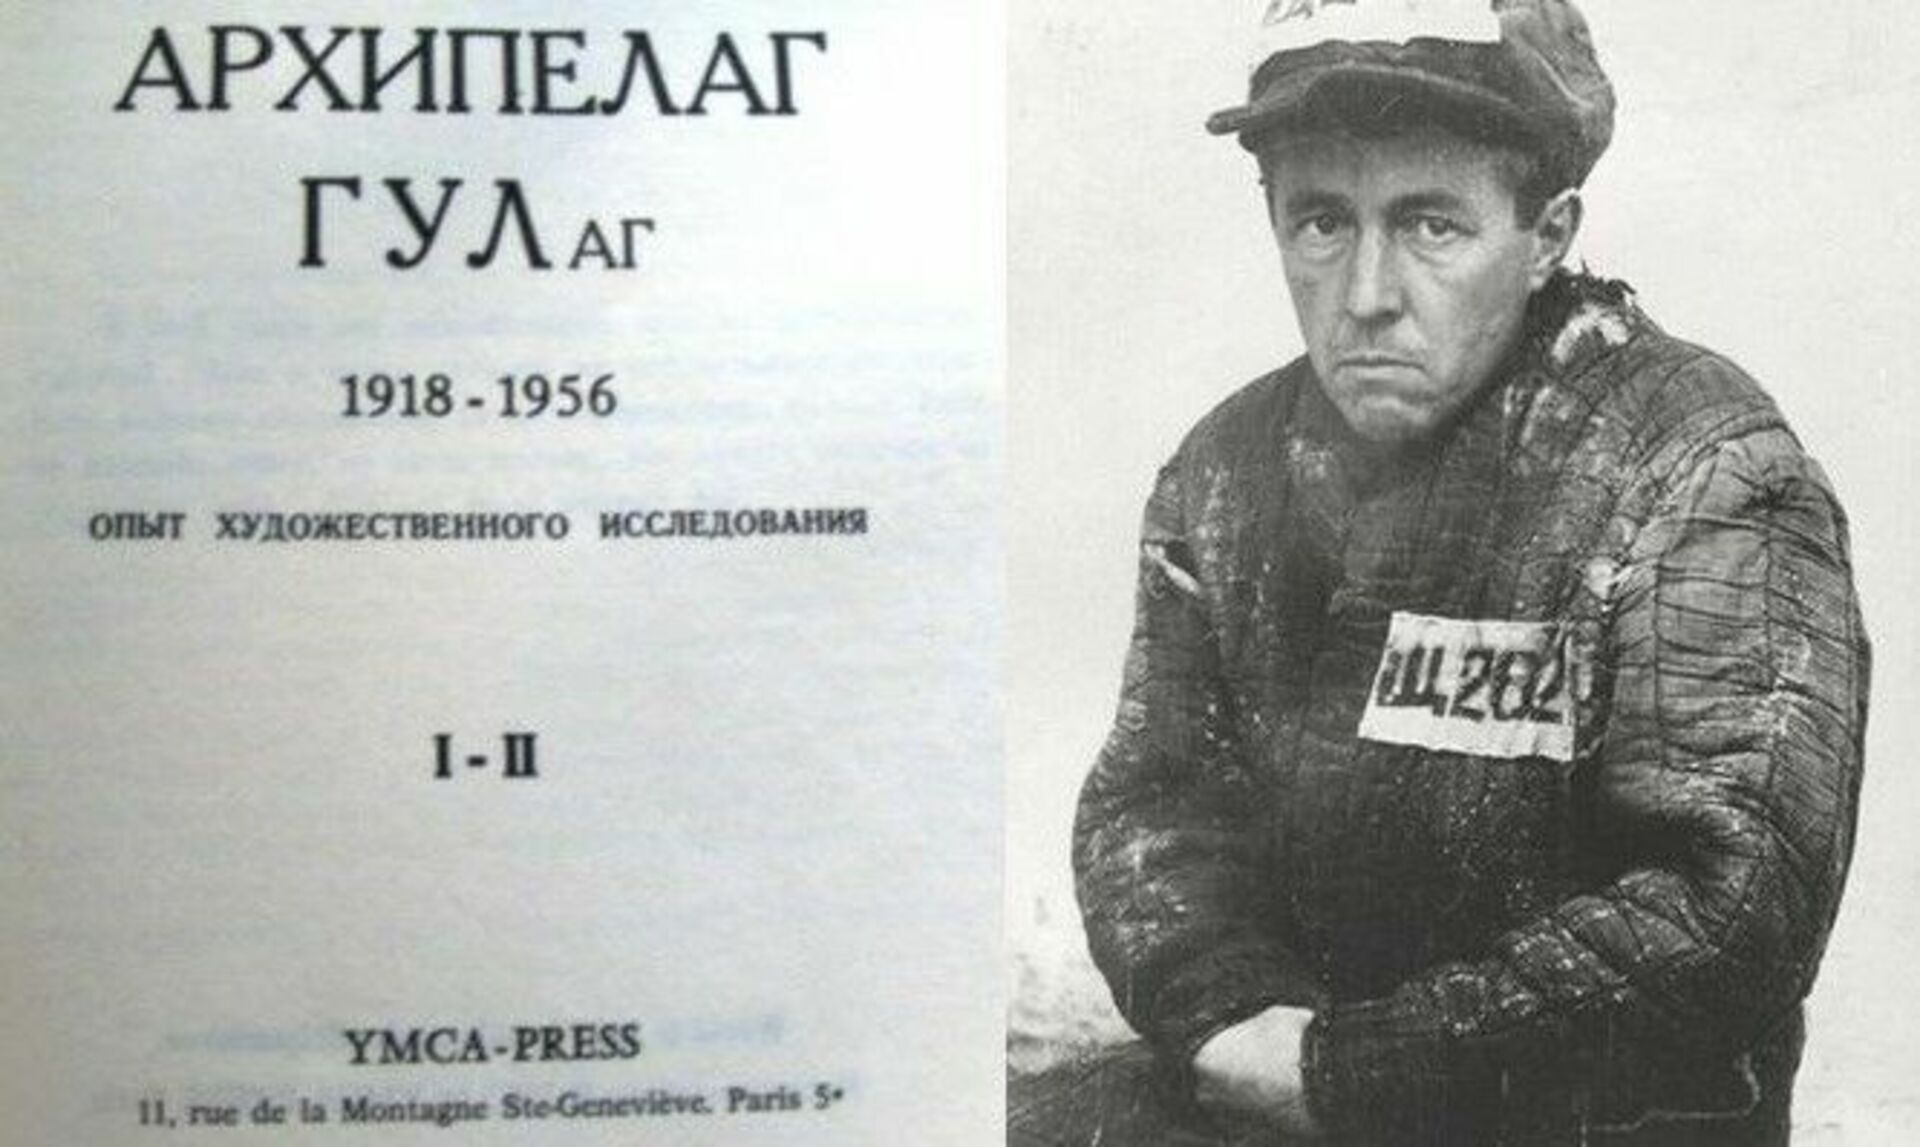 Анализ архипелаг гулаг солженицына. Архипелаг ГУЛАГ первое издание 1973. Солженицын ГУЛАГ.